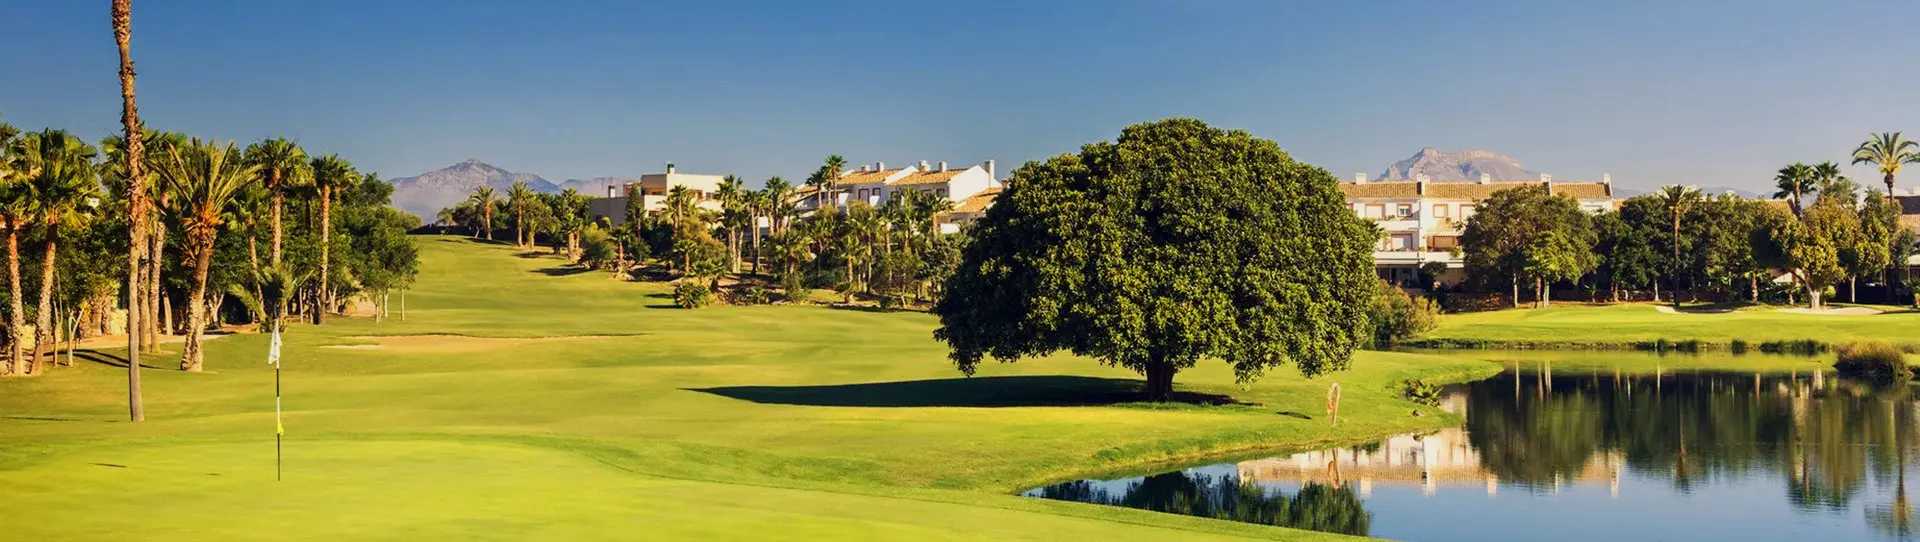 Spain golf courses - Alicante Golf Course - Photo 3